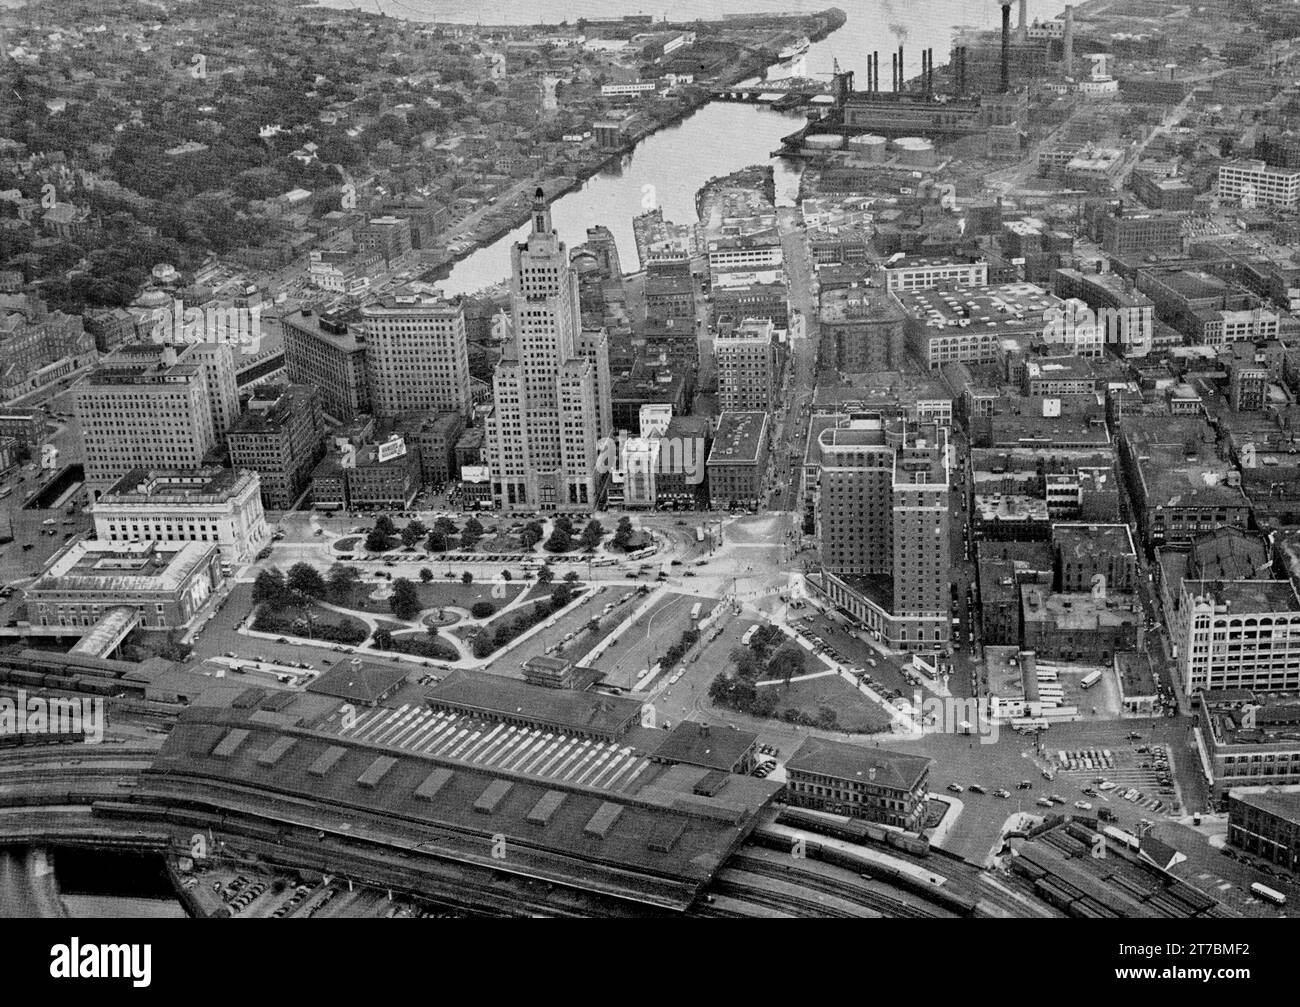 Luftaufnahme des Civic Center, 1951 Luftaufnahme der Innenstadt von Providence, Rhode Island Stockfoto